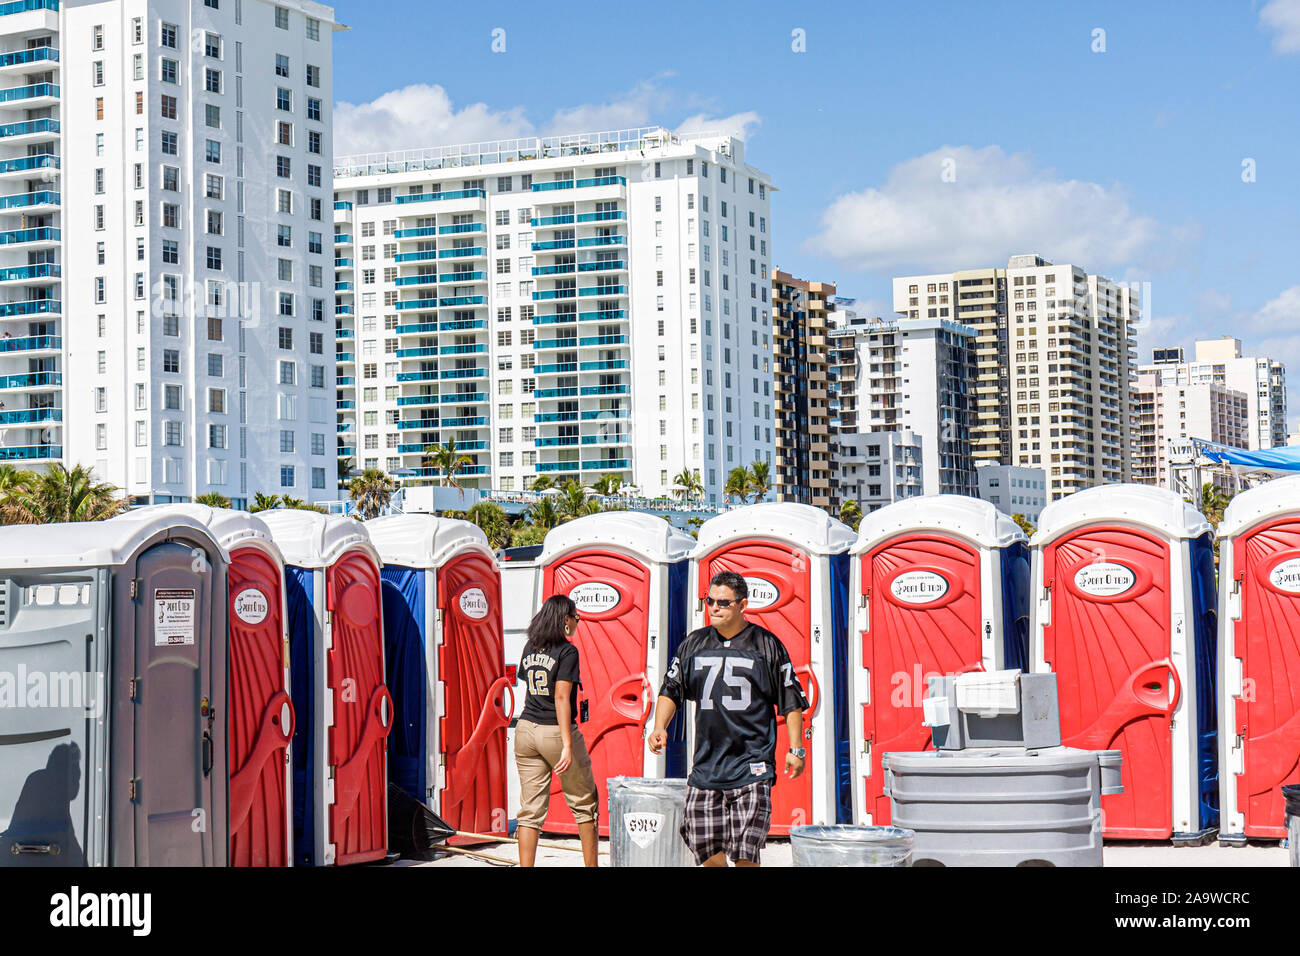 Miami Beach Florida, Super Bowl XLIV Week, NFL, Fußball, Produktmarketing, tragbare Toiletten, Hochhaus Wolkenkratzer Gebäude condomini Stockfoto